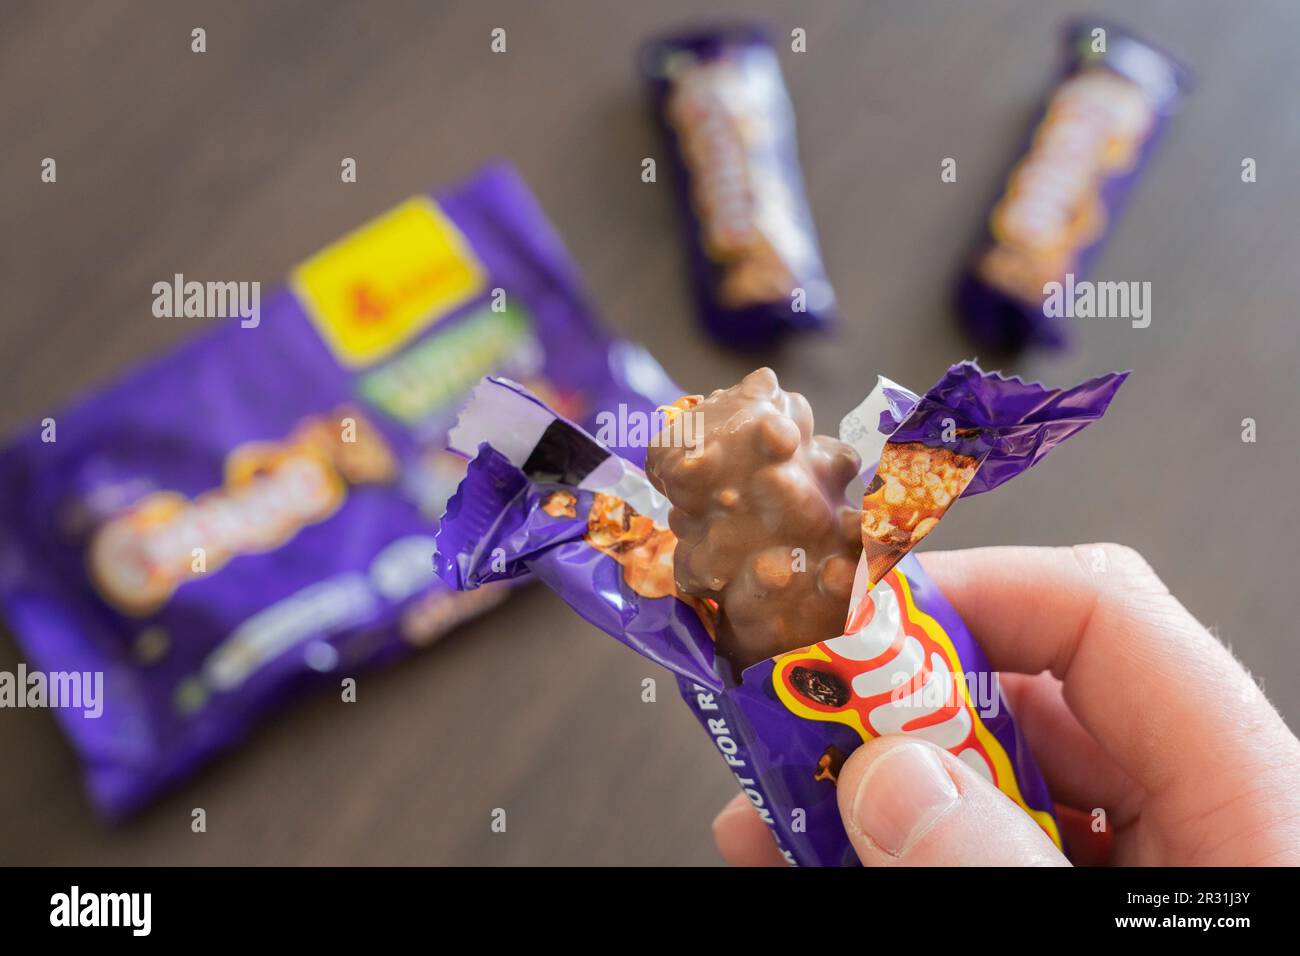 Main d'un homme tenant une barre de chocolat Cadbury Picnic non enveloppée, sur le point de la manger, Angleterre. Concept: Graisse et sucre, grignotage, nourriture malsaine Banque D'Images